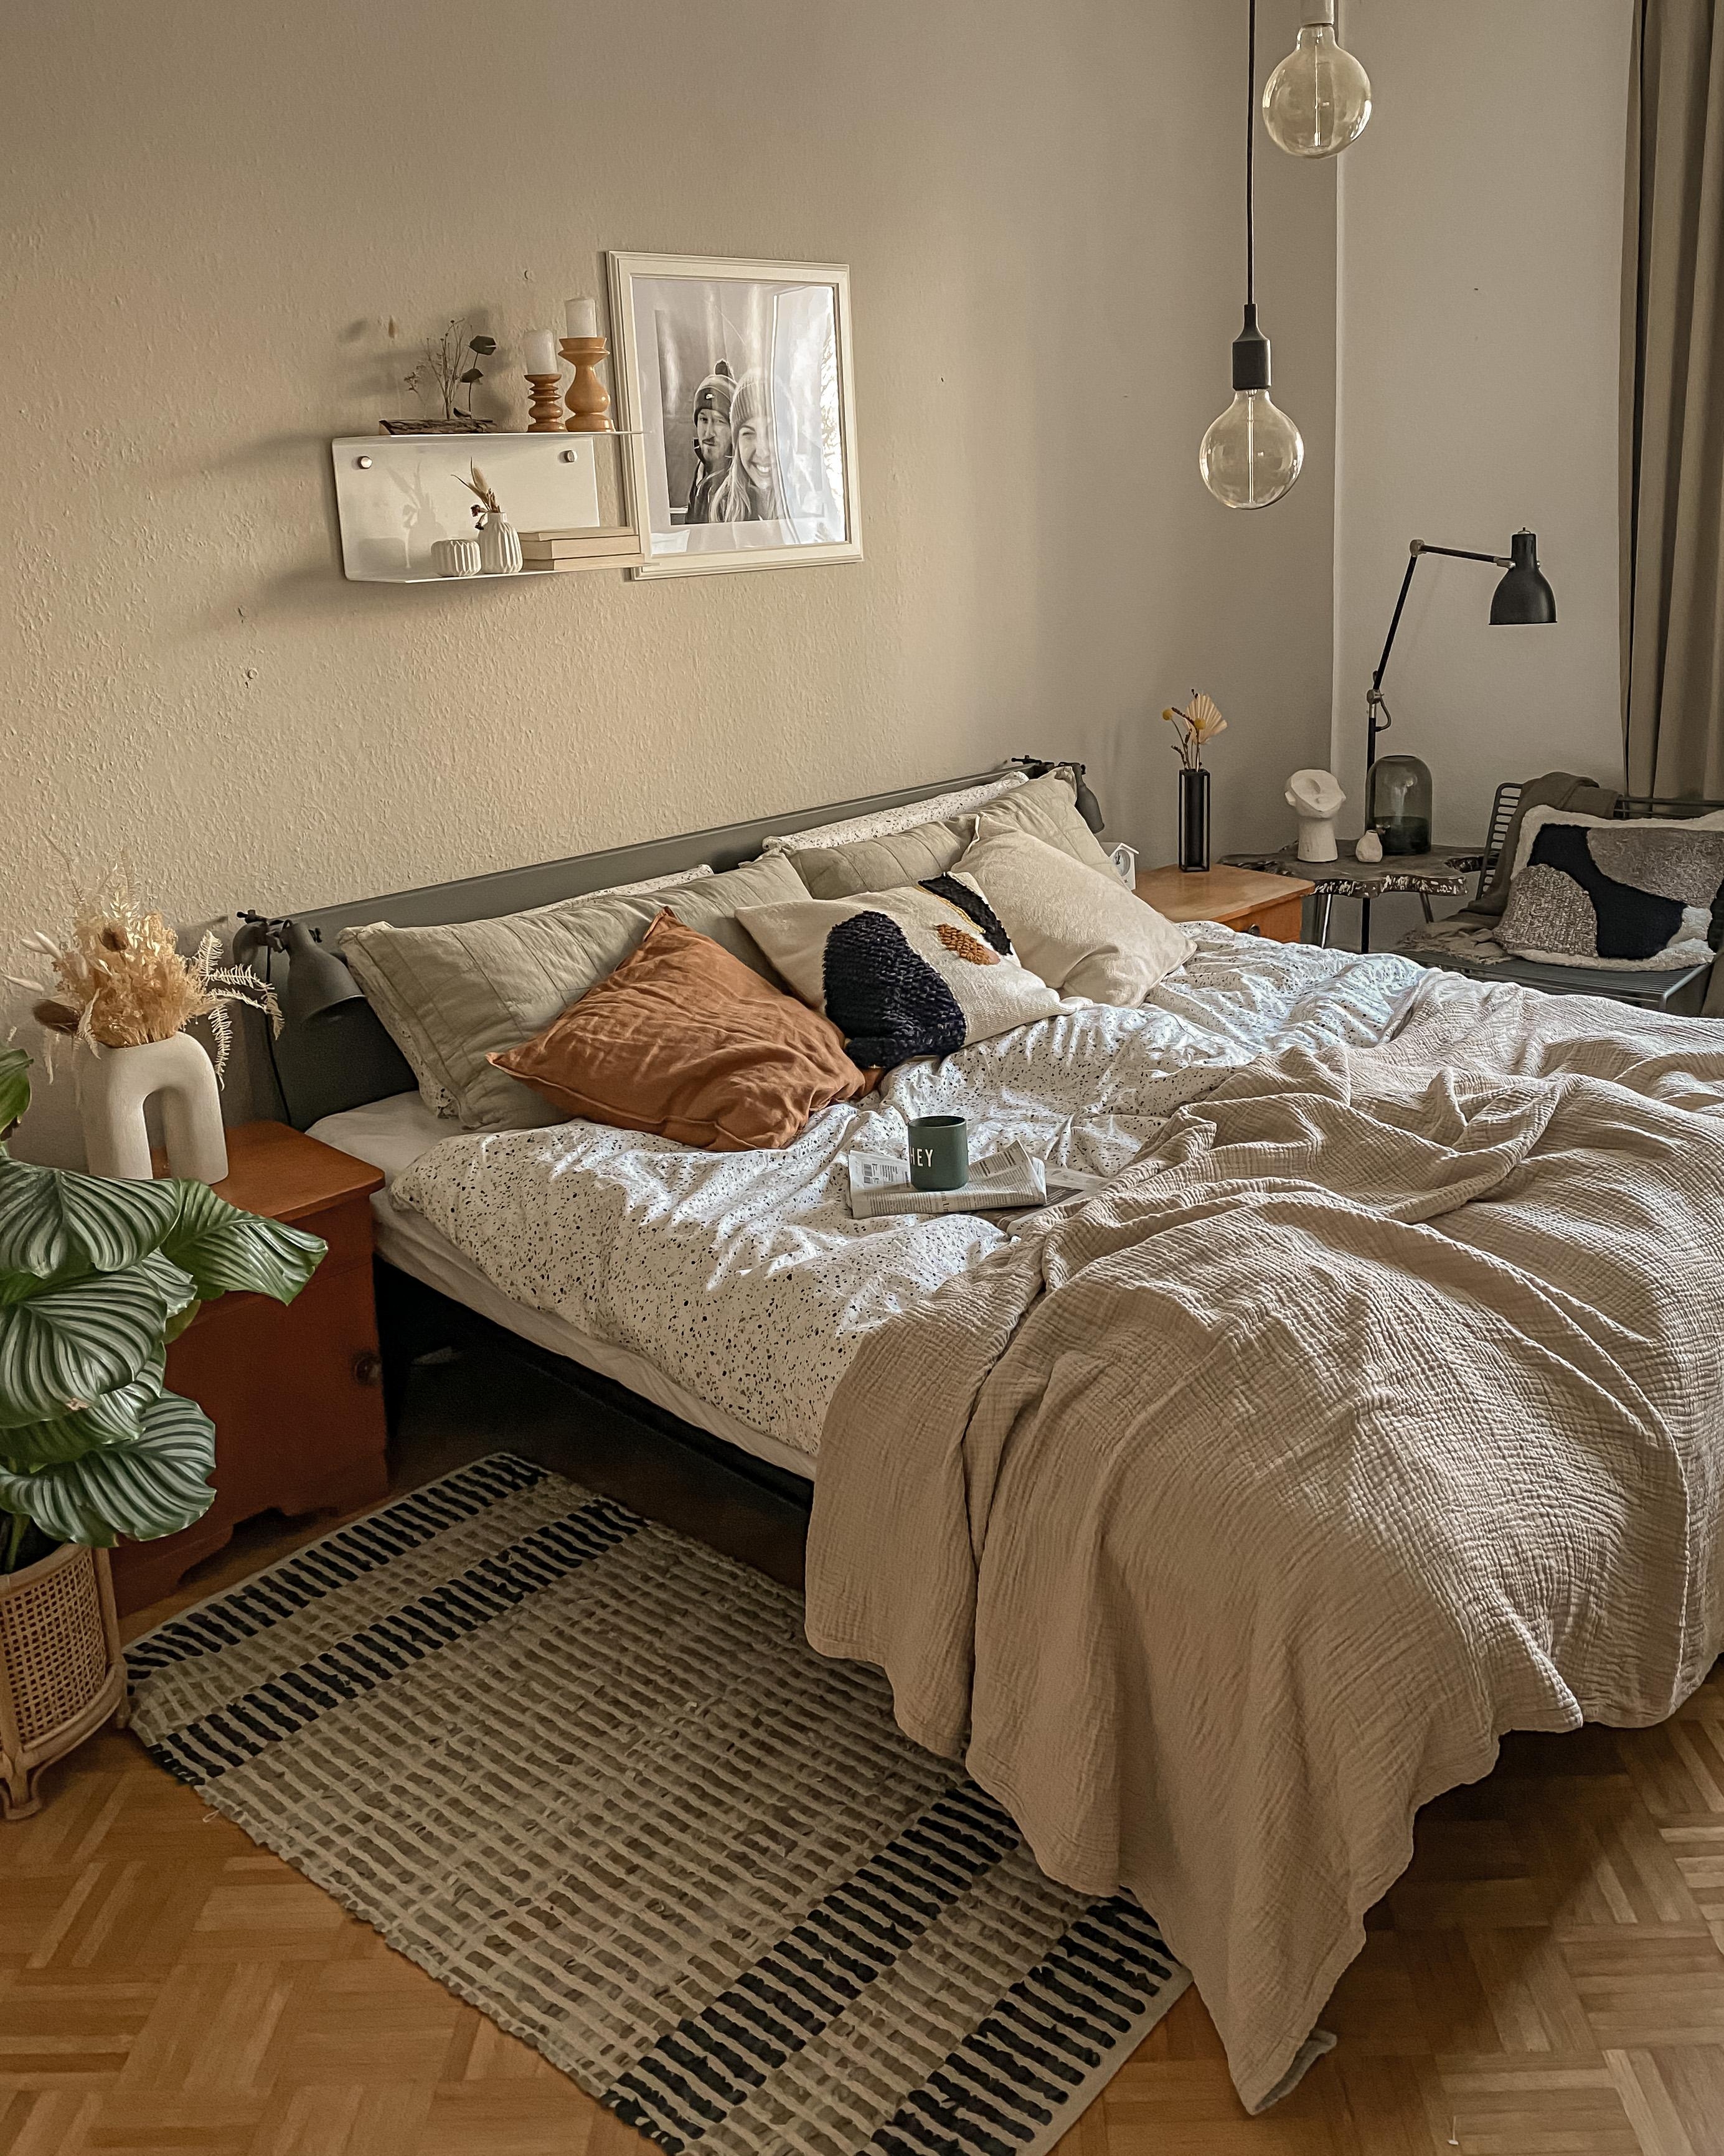 Hier nochmal mein Gewinn vom Gewinnspiel des Couchmagazins: Das tolle Bett!🥰 #bedroom #schlafzimmer #bett #boho #cozy